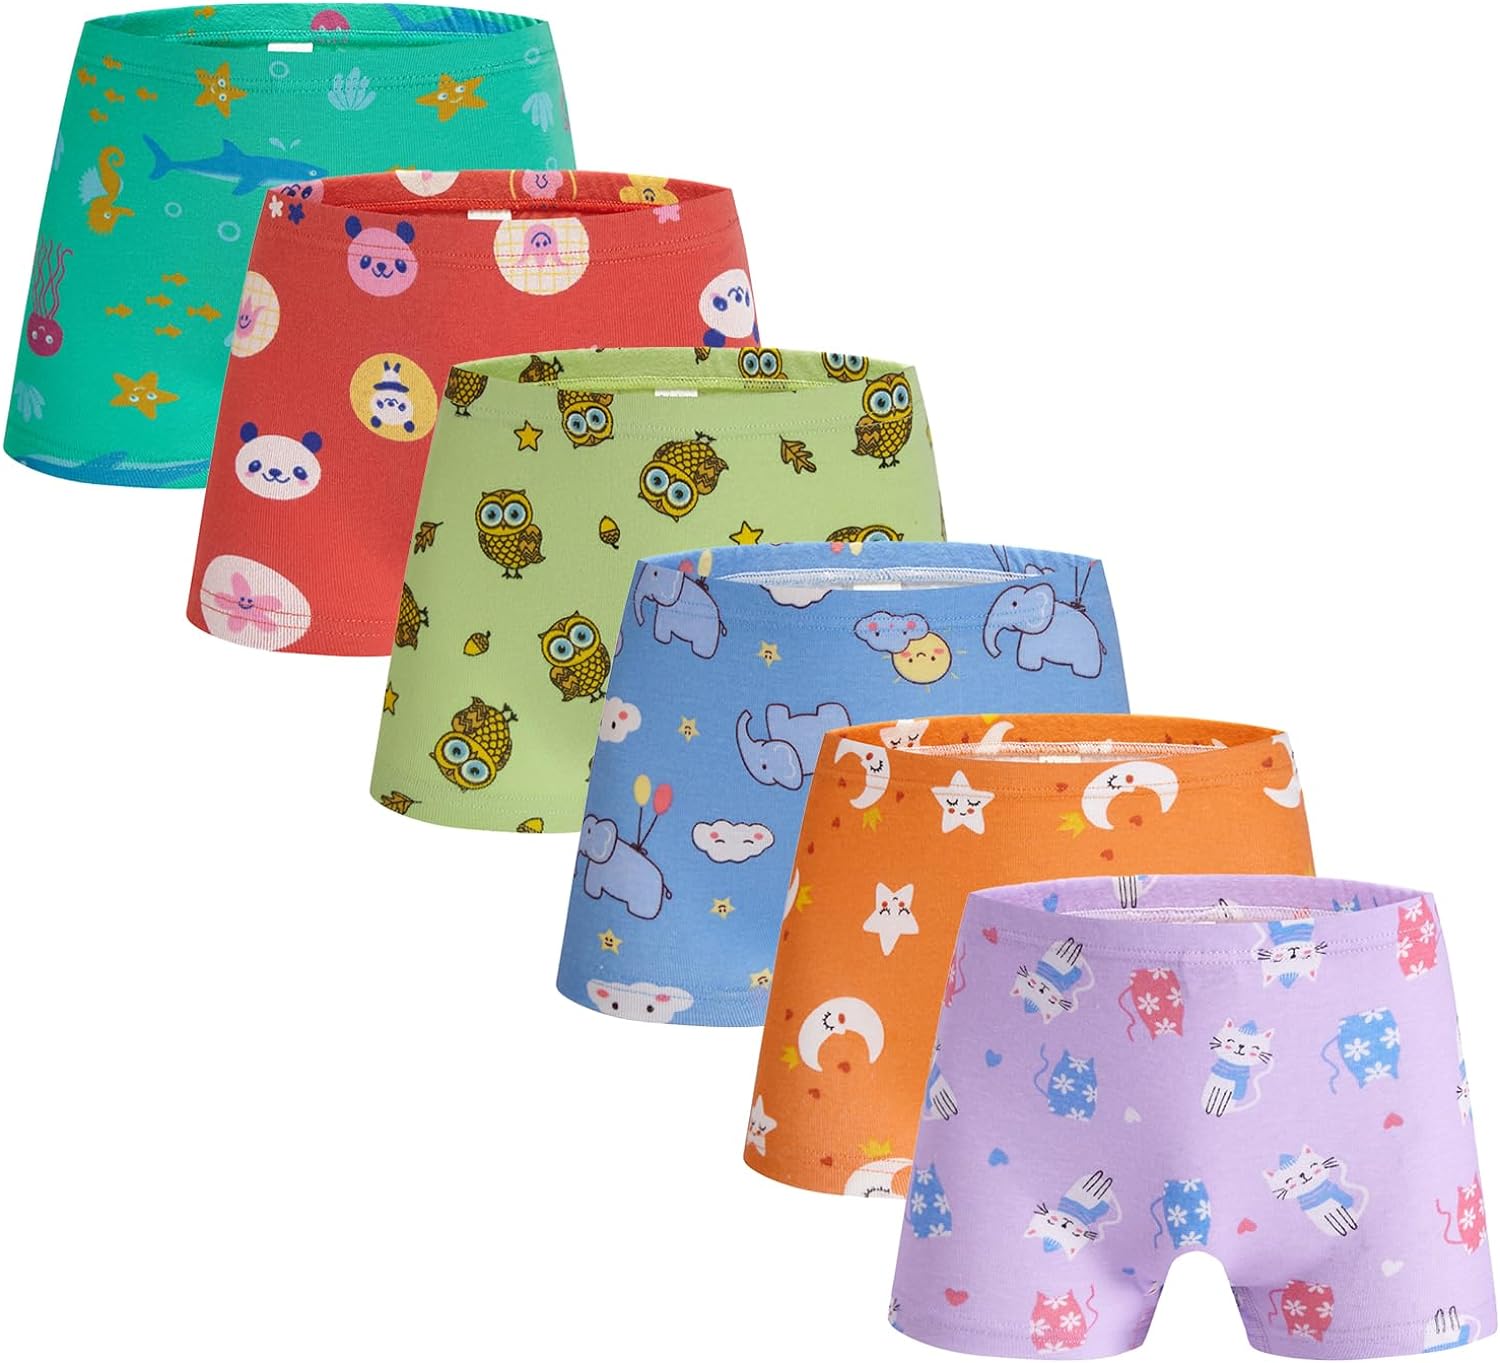 Boboking Baby Soft Cotton Underwear Little Girls'Briefs Toddler